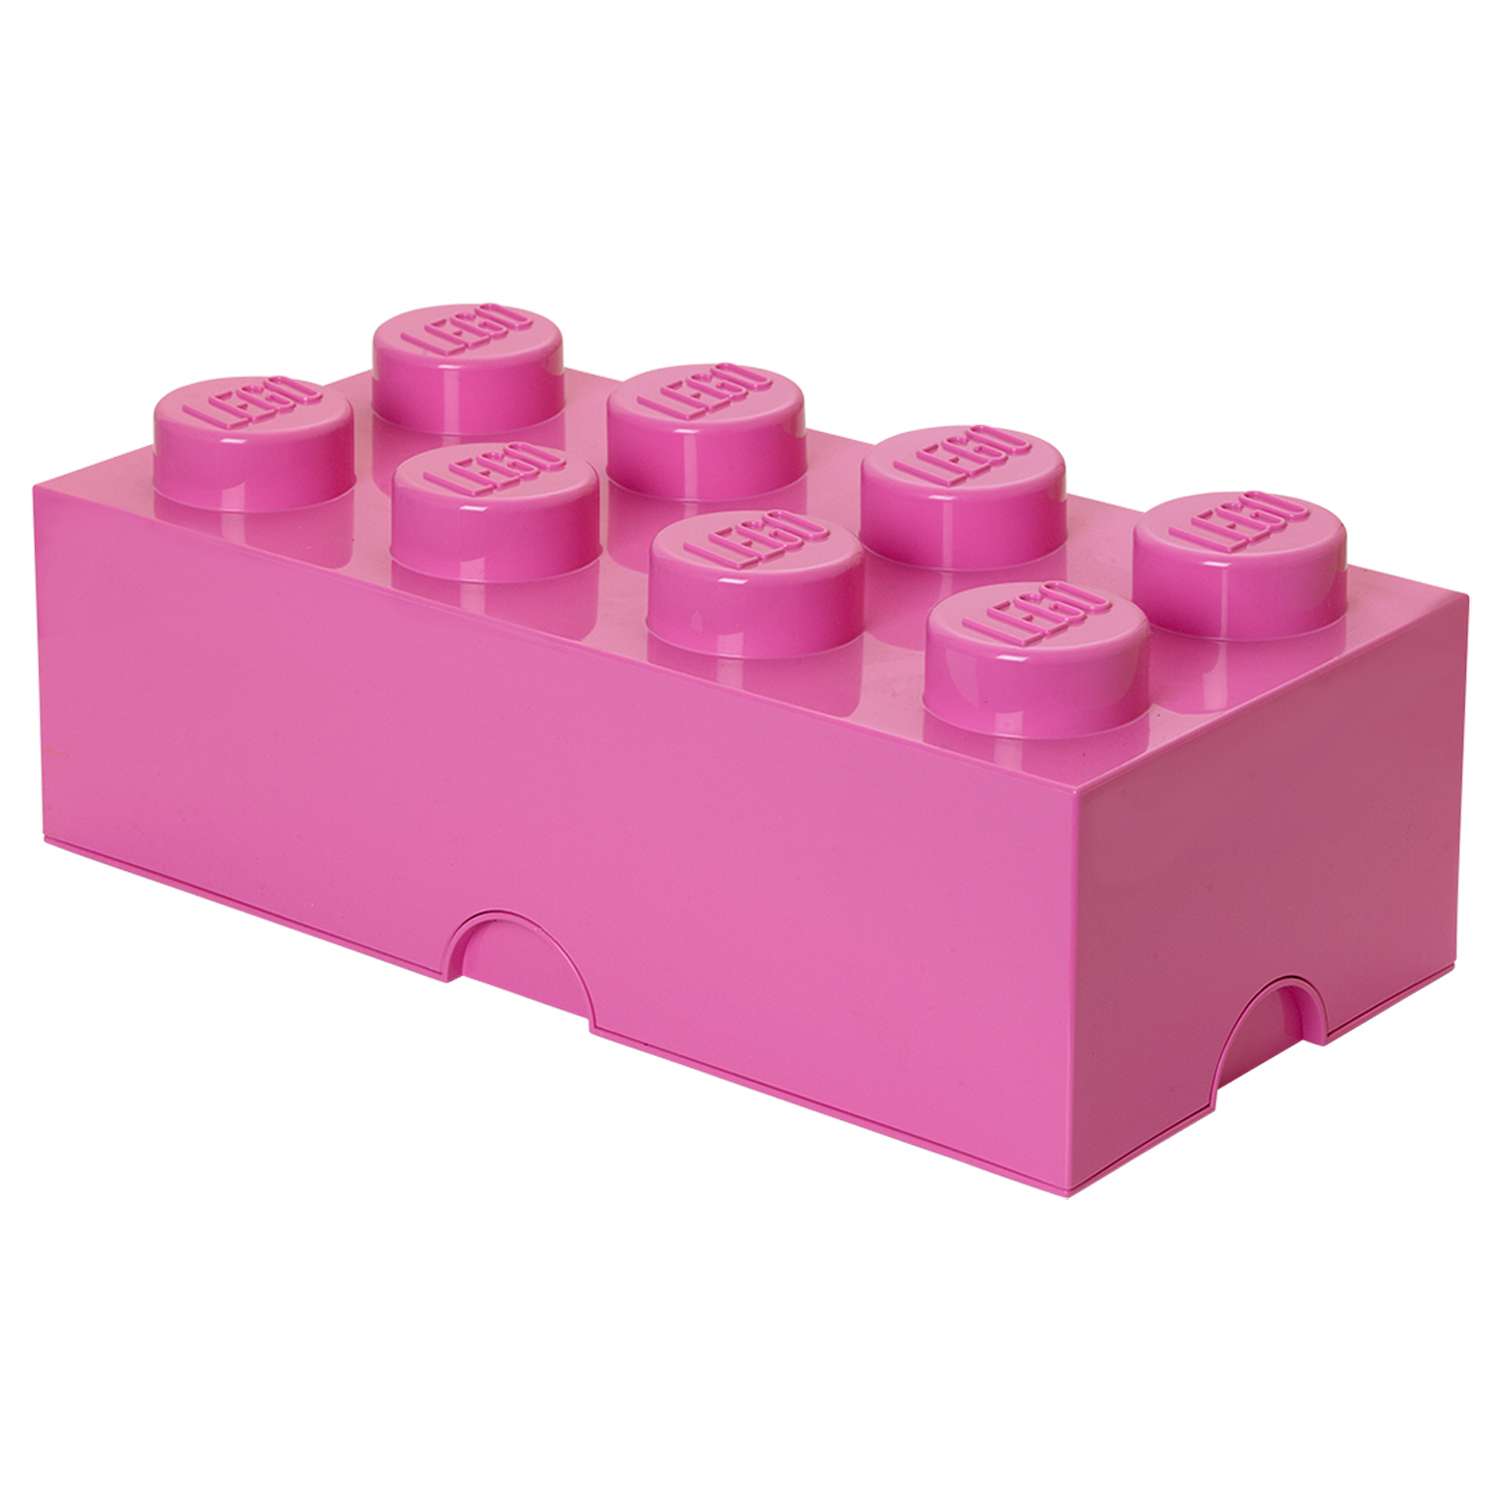 Ящик для игрушек LEGO Friends лиловый - фото 2